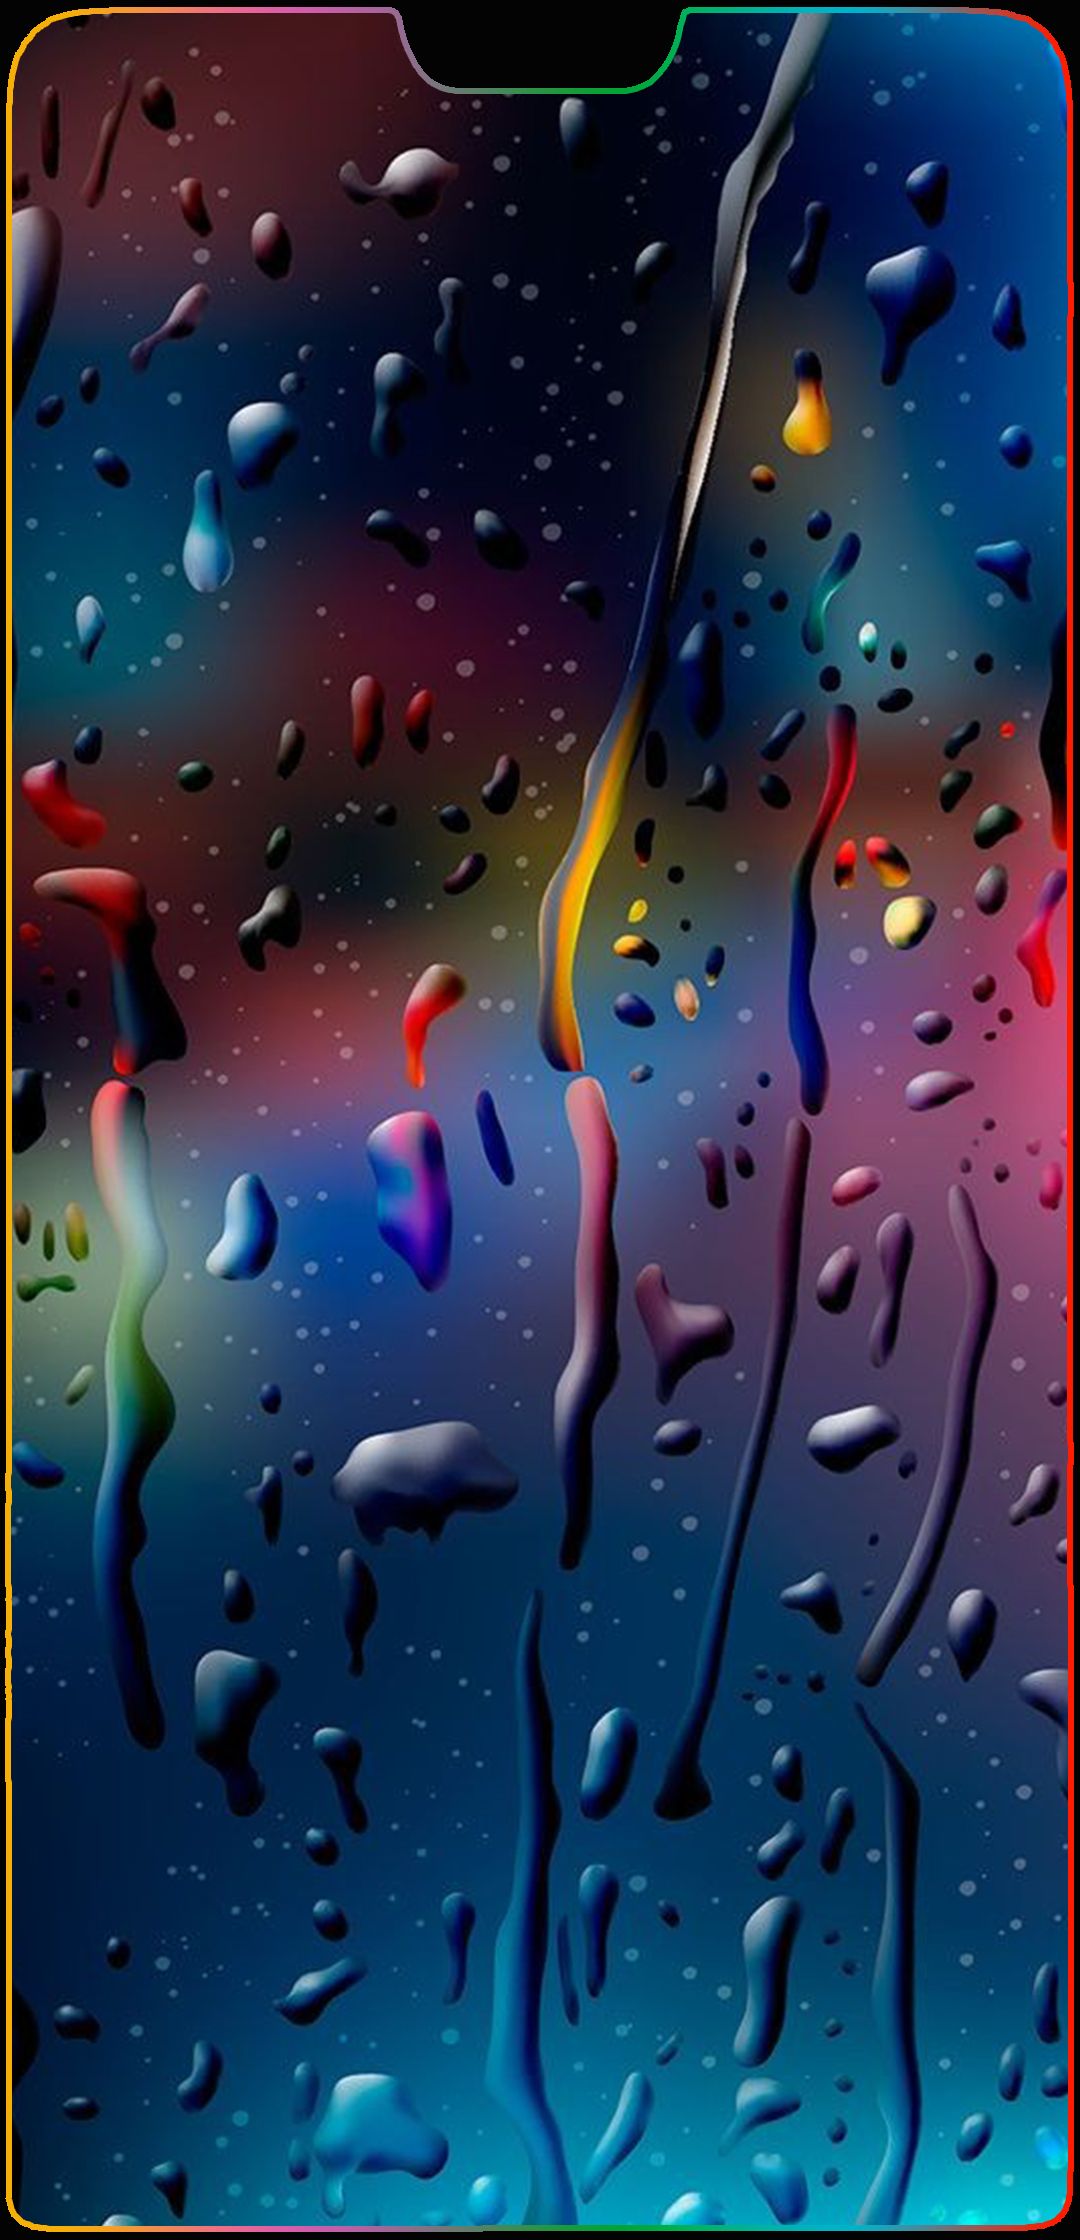 Rain p20 pro Huawei P20 Notch Wallpapers in 2019 Iphone